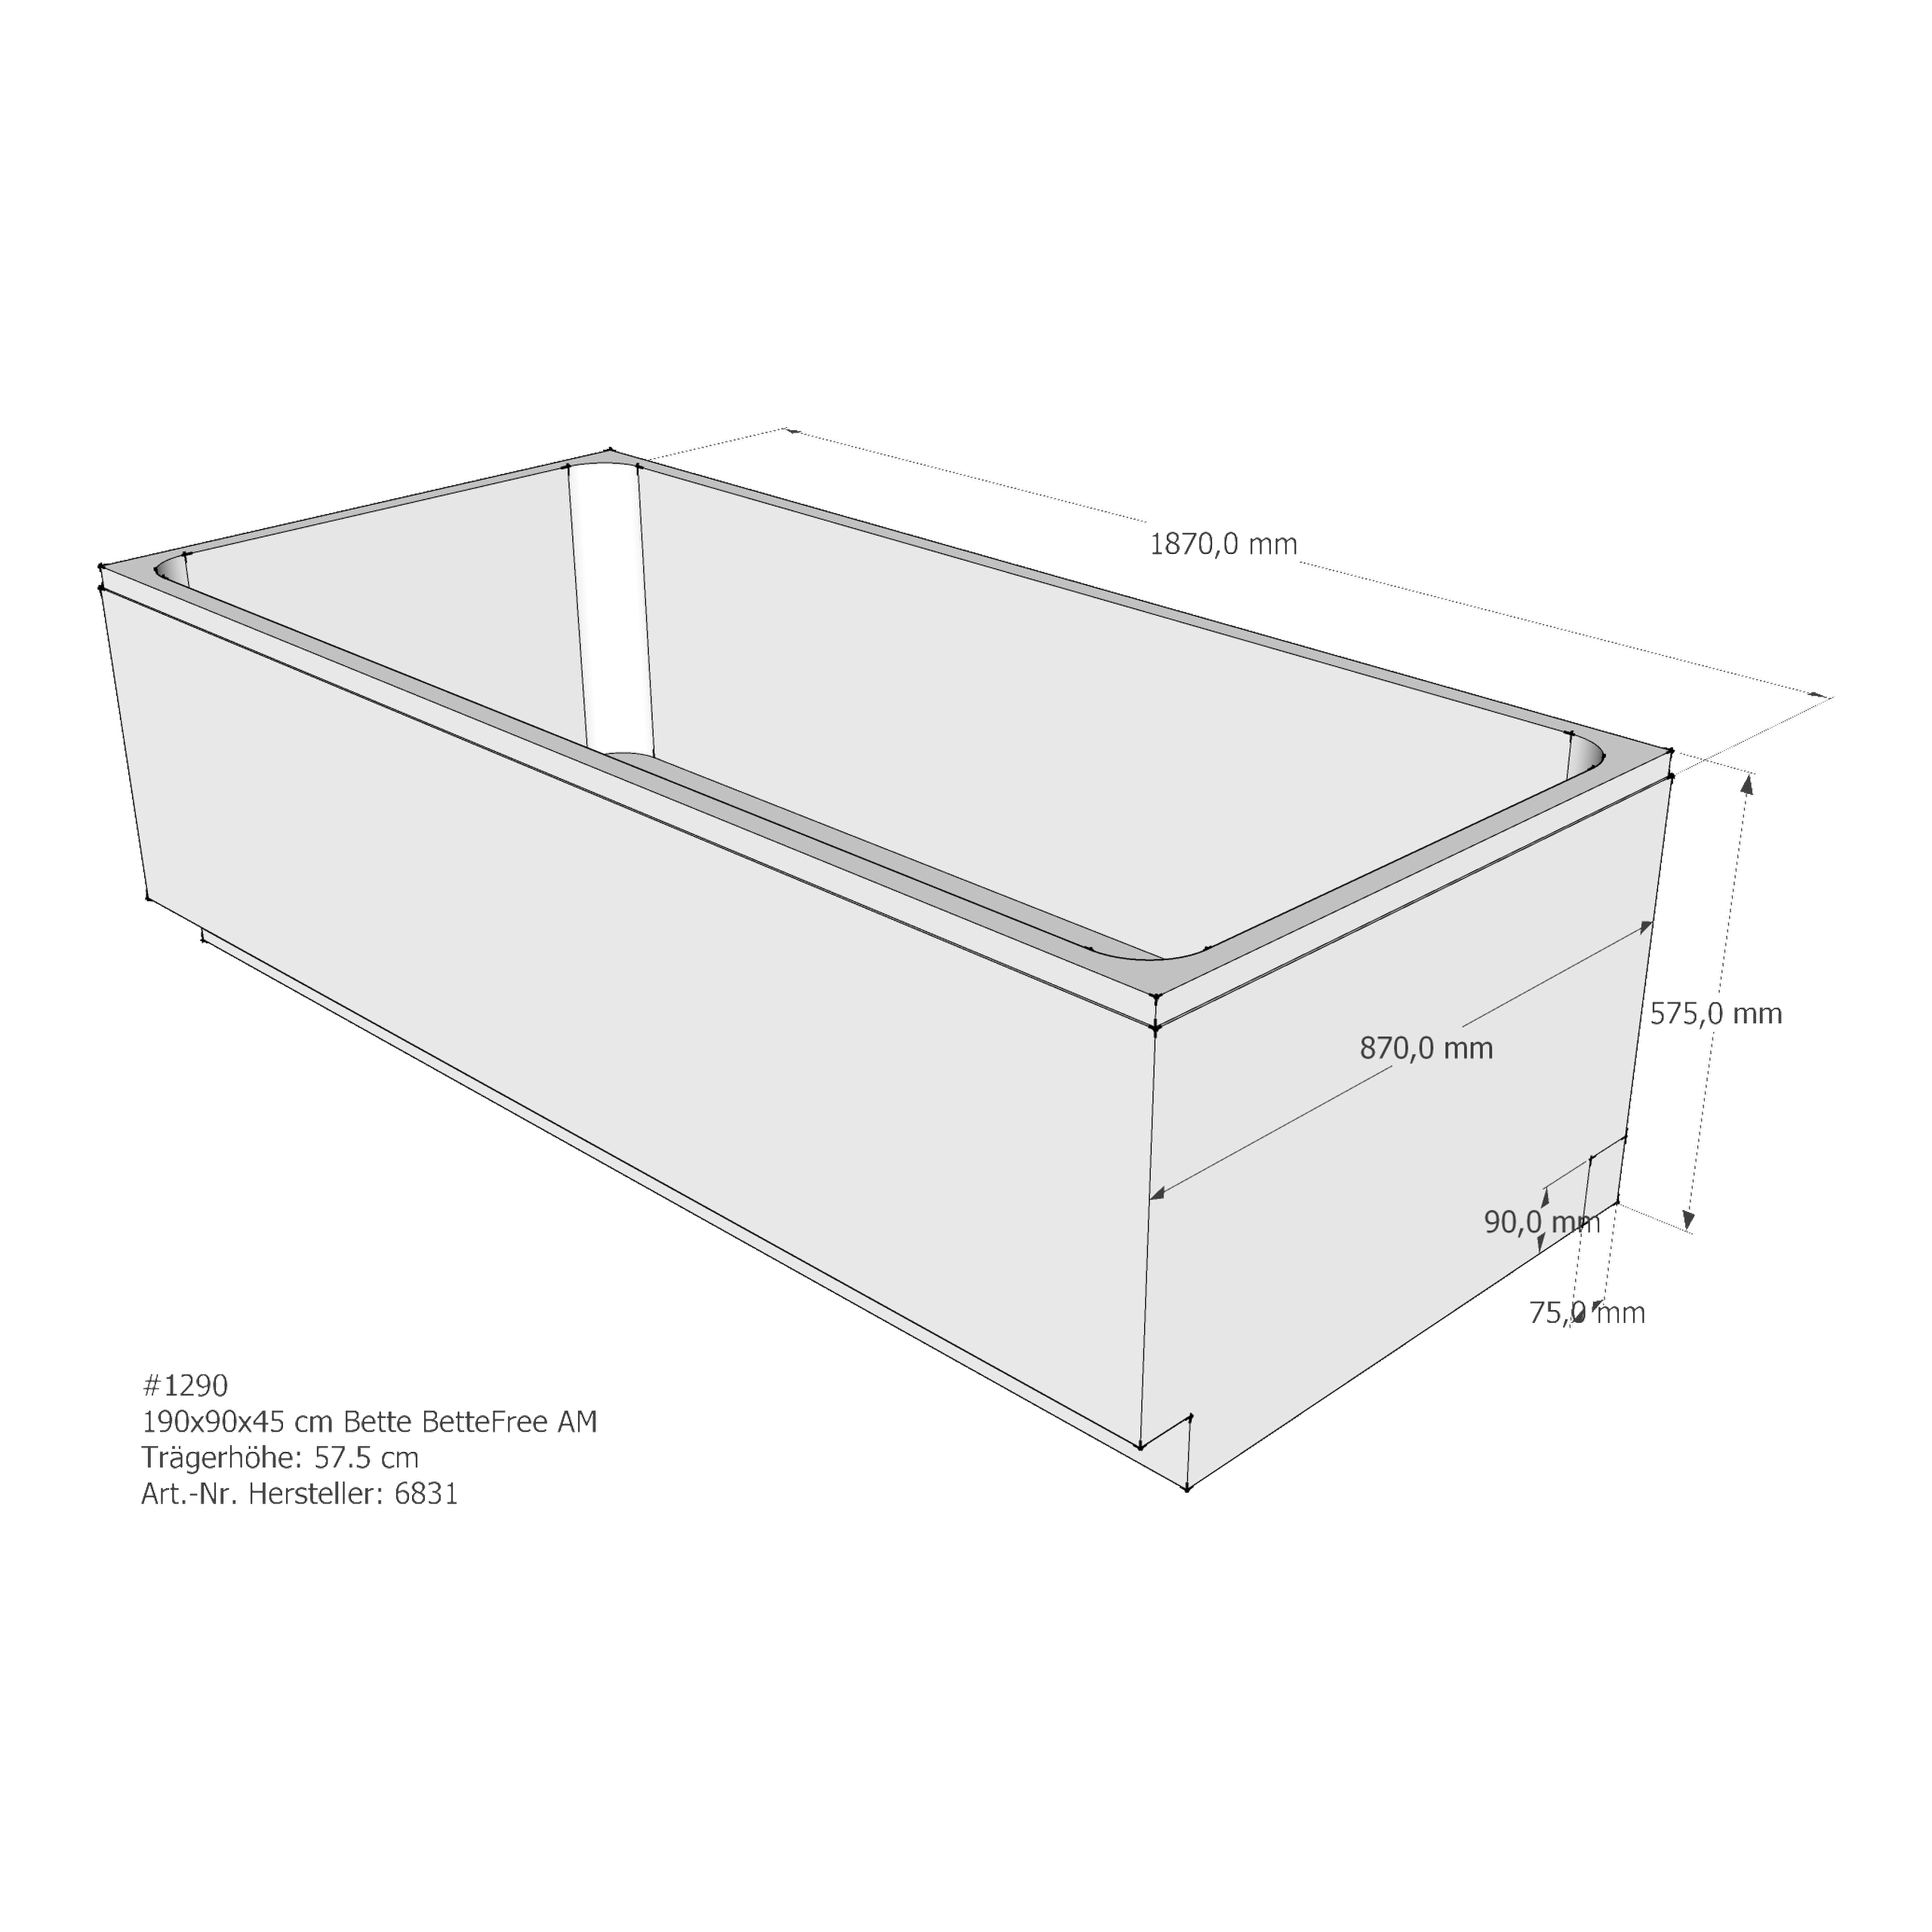 Badewannenträger für Bette BetteFree 190 × 90 × 45 cm